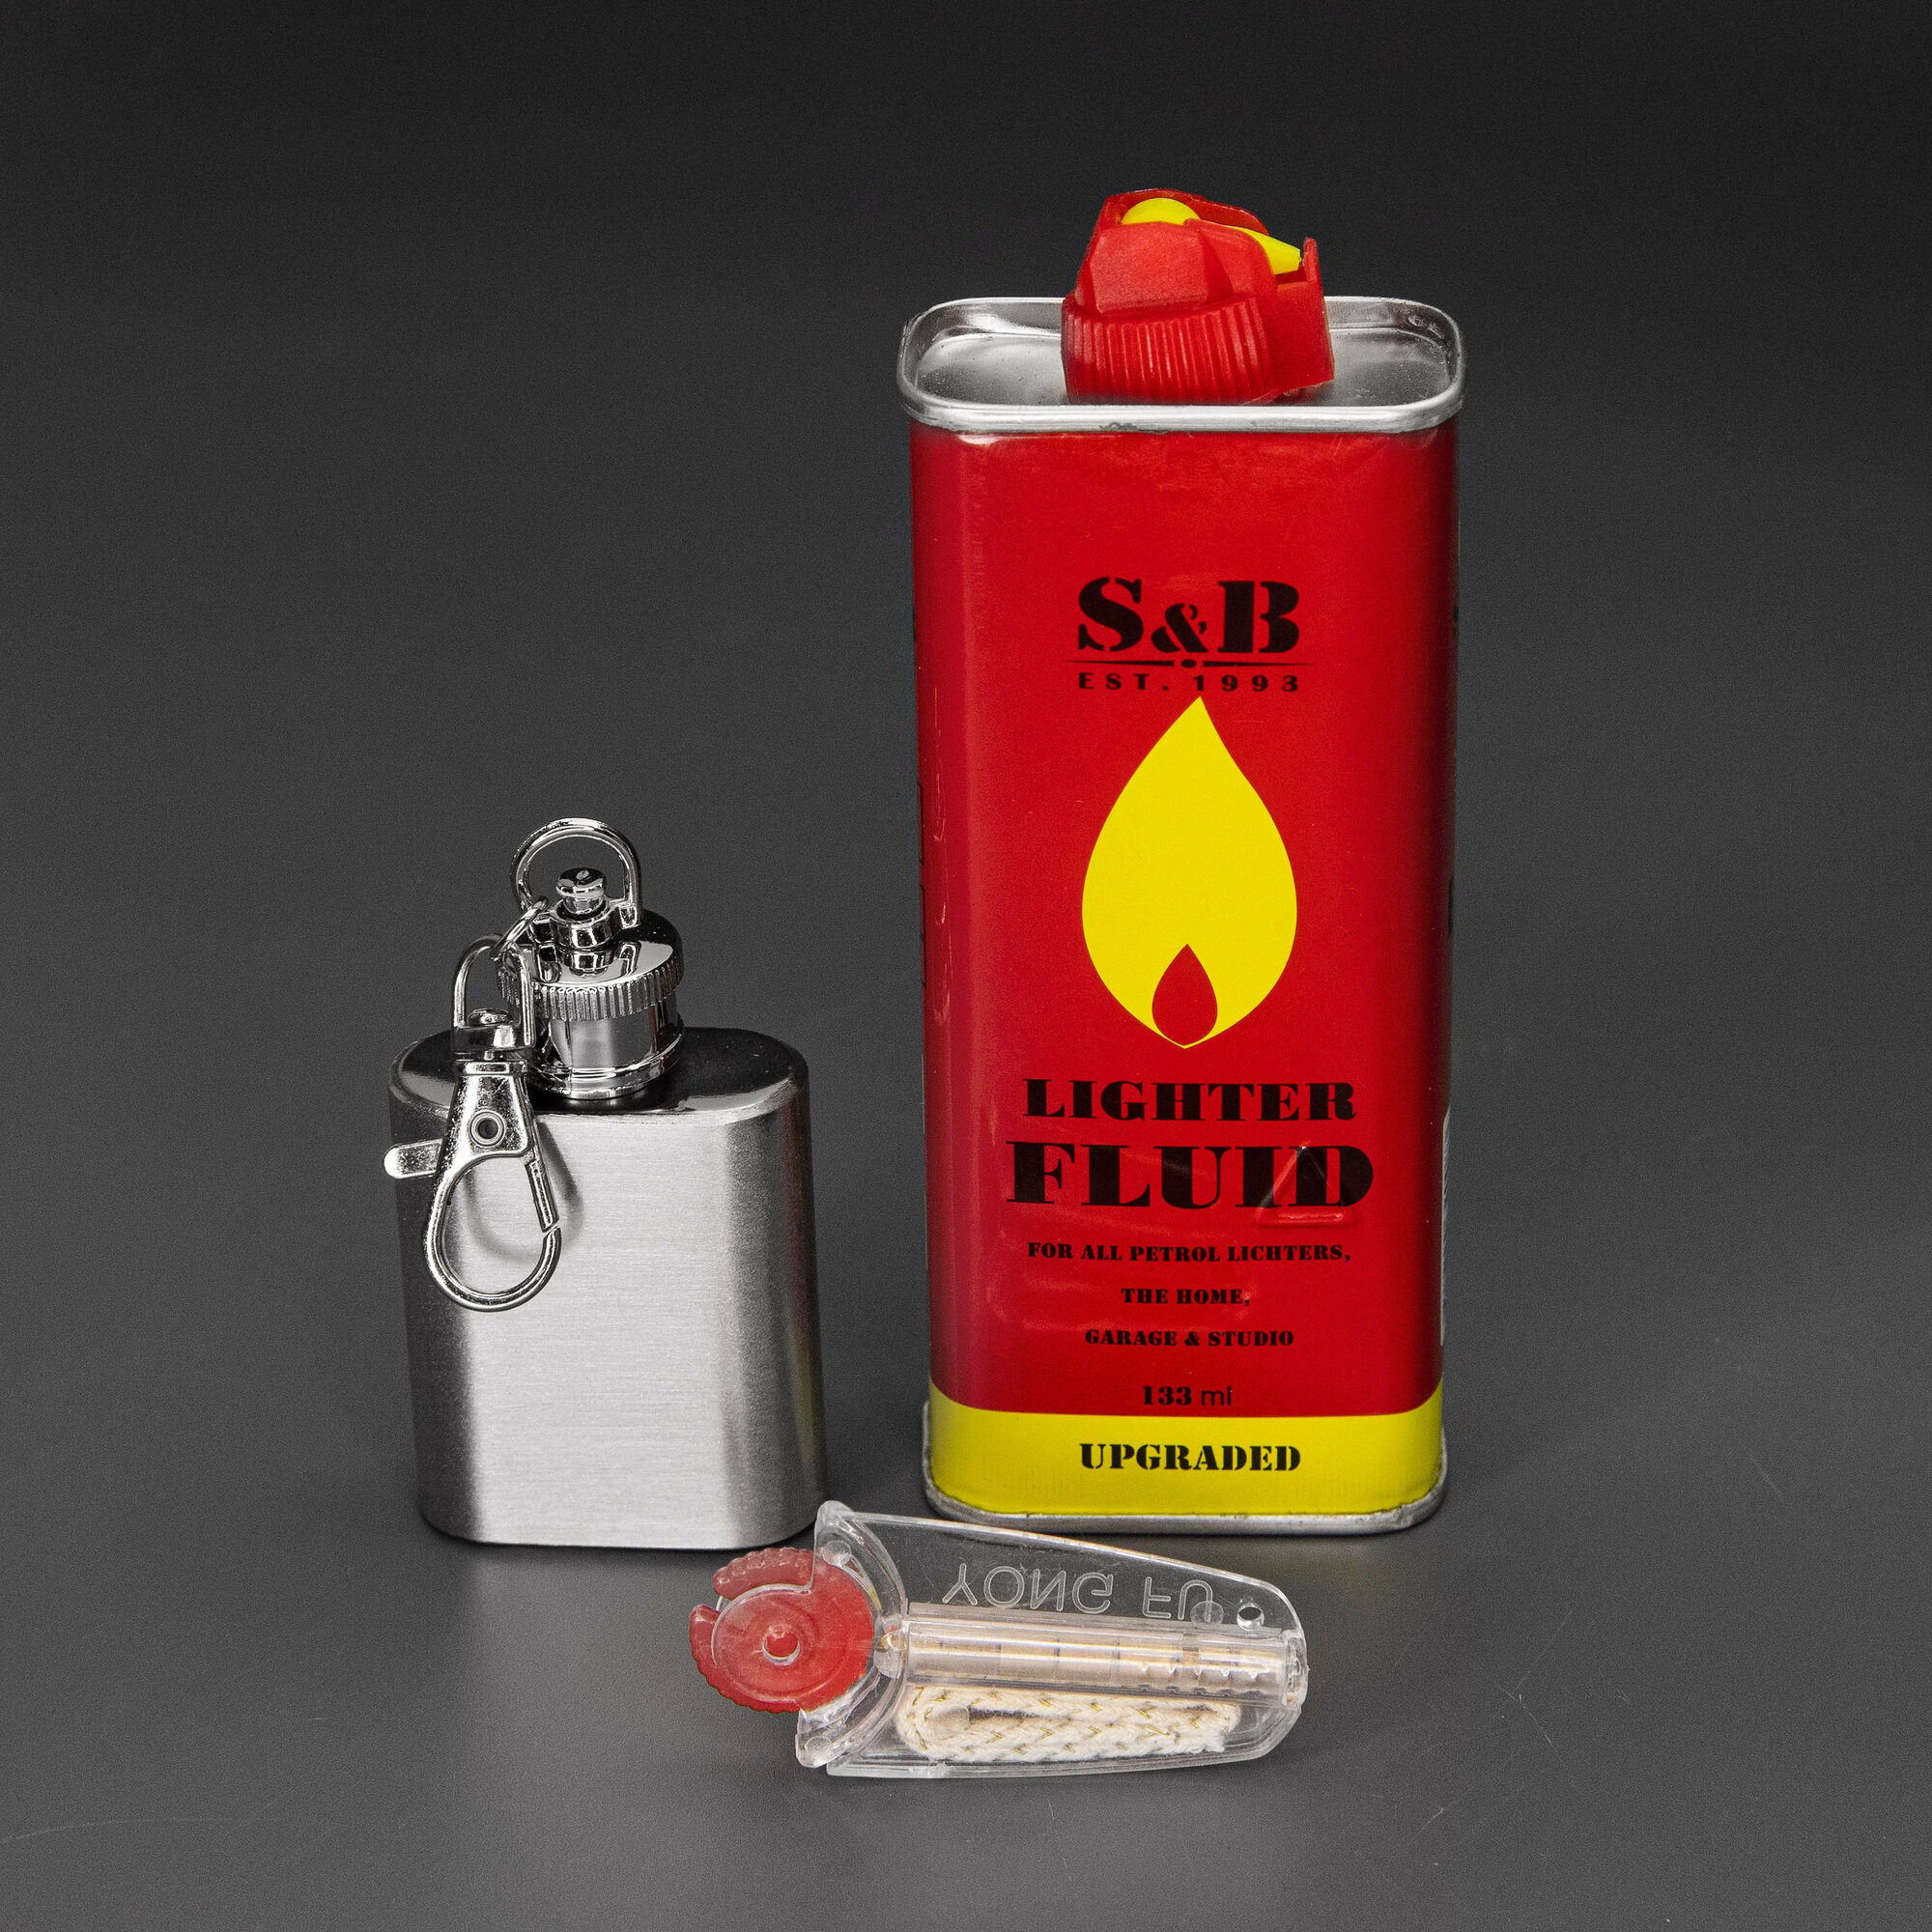 ЗИП набор-заправка для зажигалки: канистра стальная (30 мл), Lighter fluid (133 мл), фитиль (10 см) и кремний (7 шт)